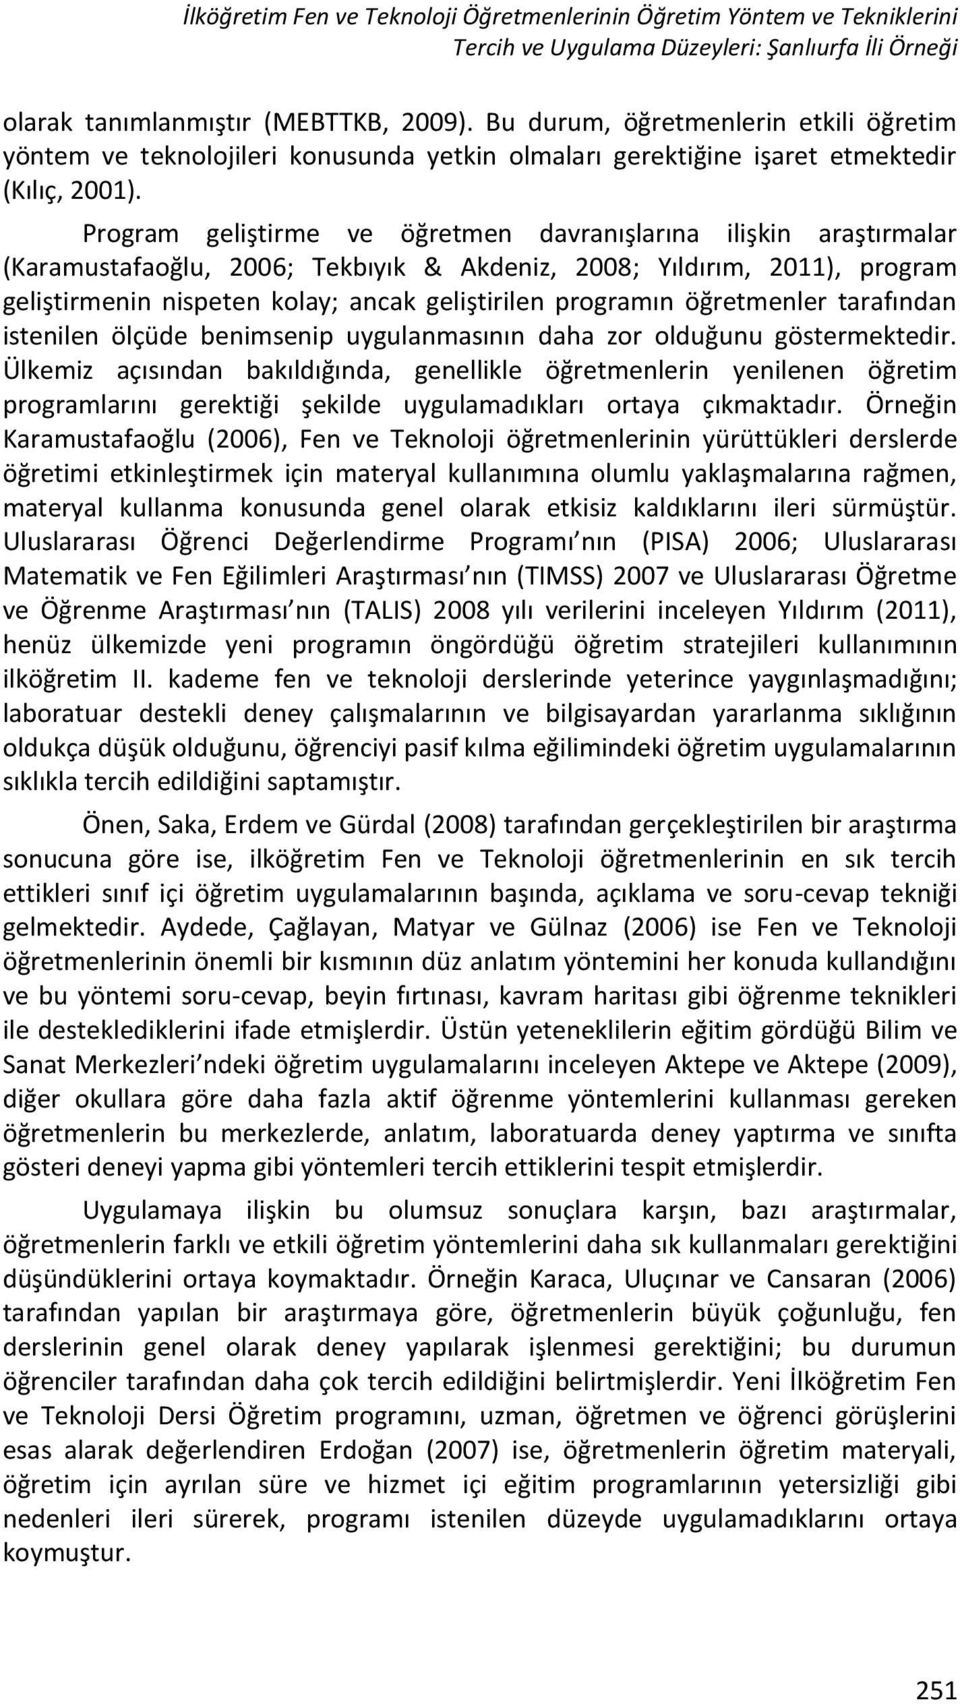 Program geliştirme ve öğretmen davranışlarına ilişkin araştırmalar (Karamustafaoğlu, 2006; Tekbıyık & Akdeniz, 2008; Yıldırım, 2011), program geliştirmenin nispeten kolay; ancak geliştirilen